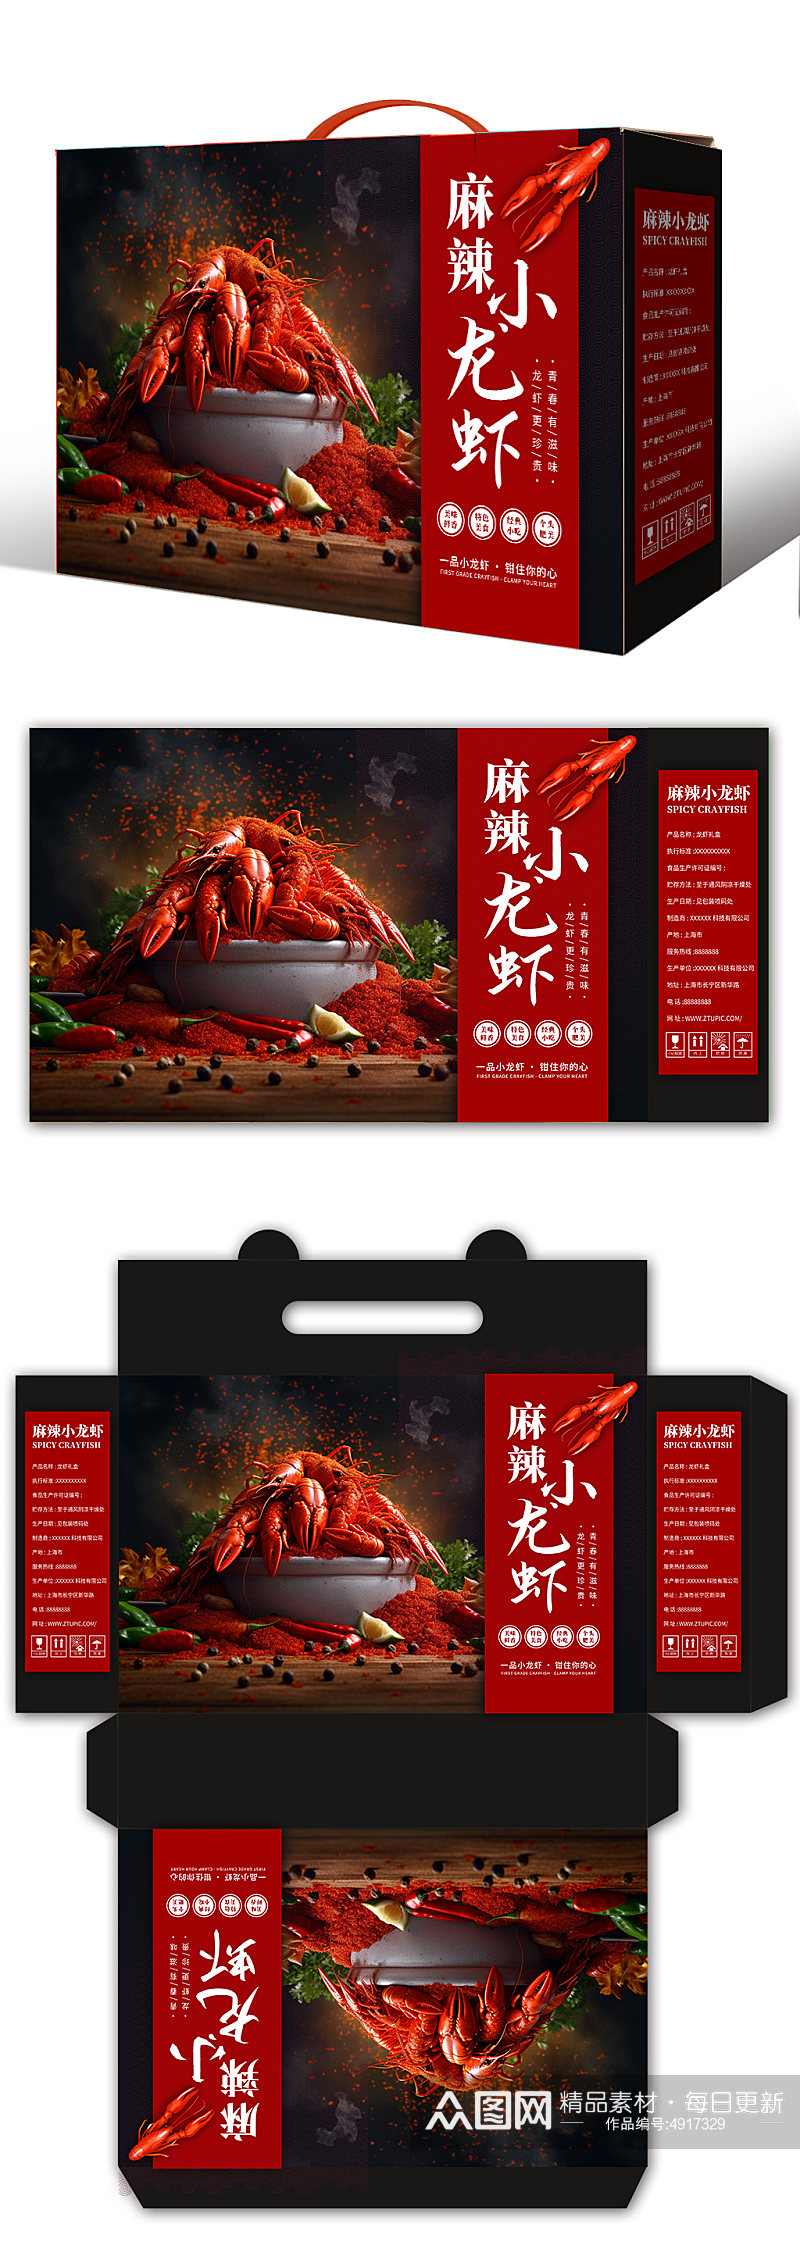 红色麻辣小龙虾包装礼盒素材